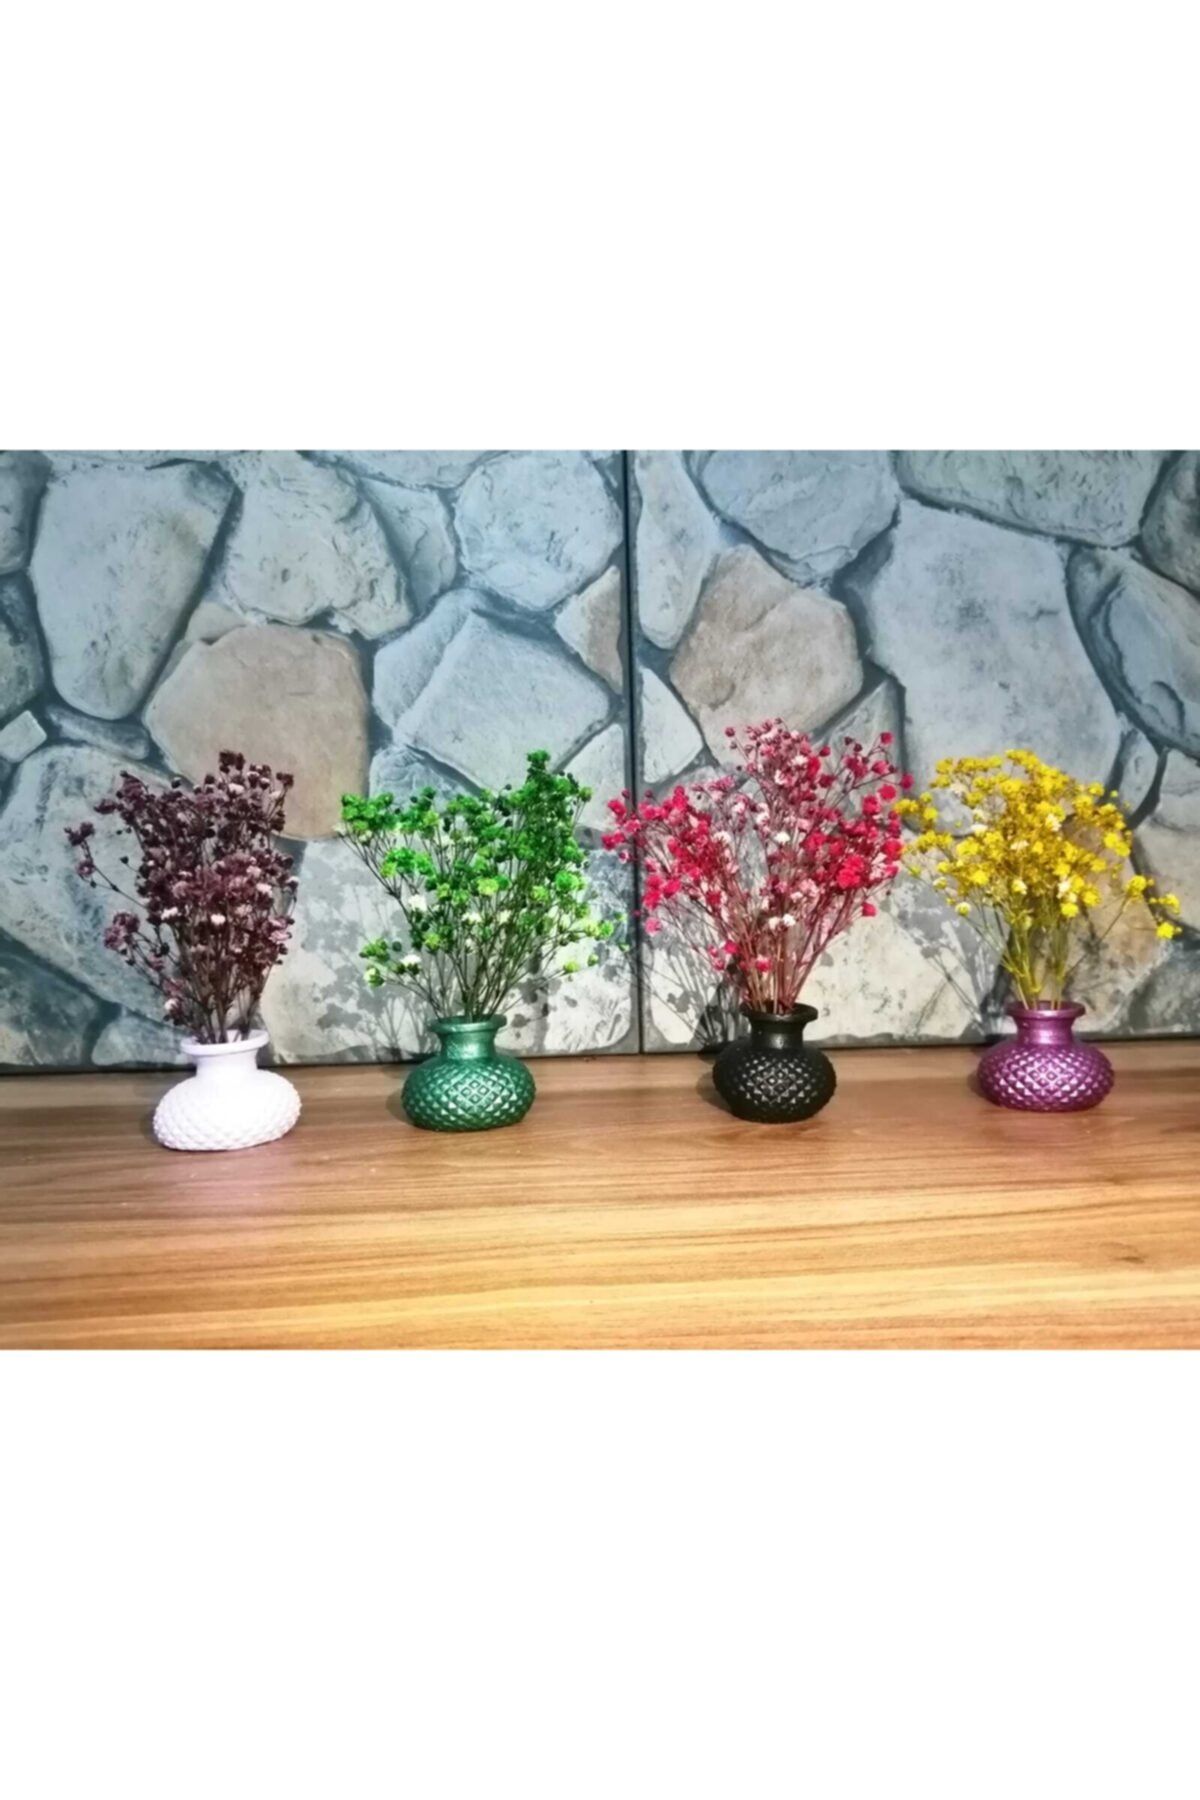 MevaDesing Sunumluk Vazo Takımı 4 Adet Ve Çiçekleri